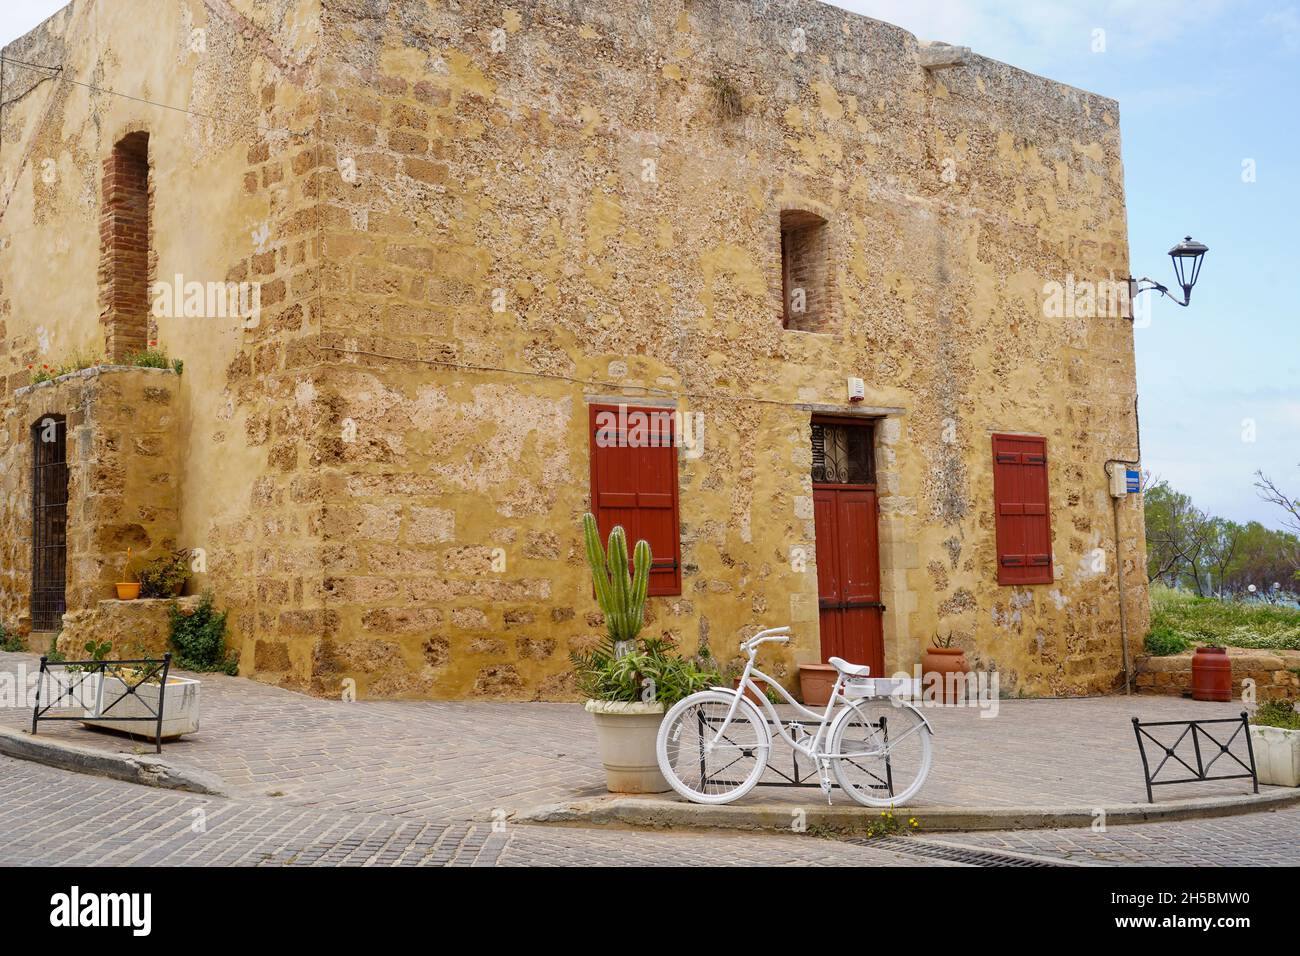 Bici bianca (bicicletta bianca, bicicletta fantasma) a Chania, Creta, Grecia una vecchia bici rottami dipinta di bianco come memoriale di un ciclista ucciso sulla strada a questo Foto Stock